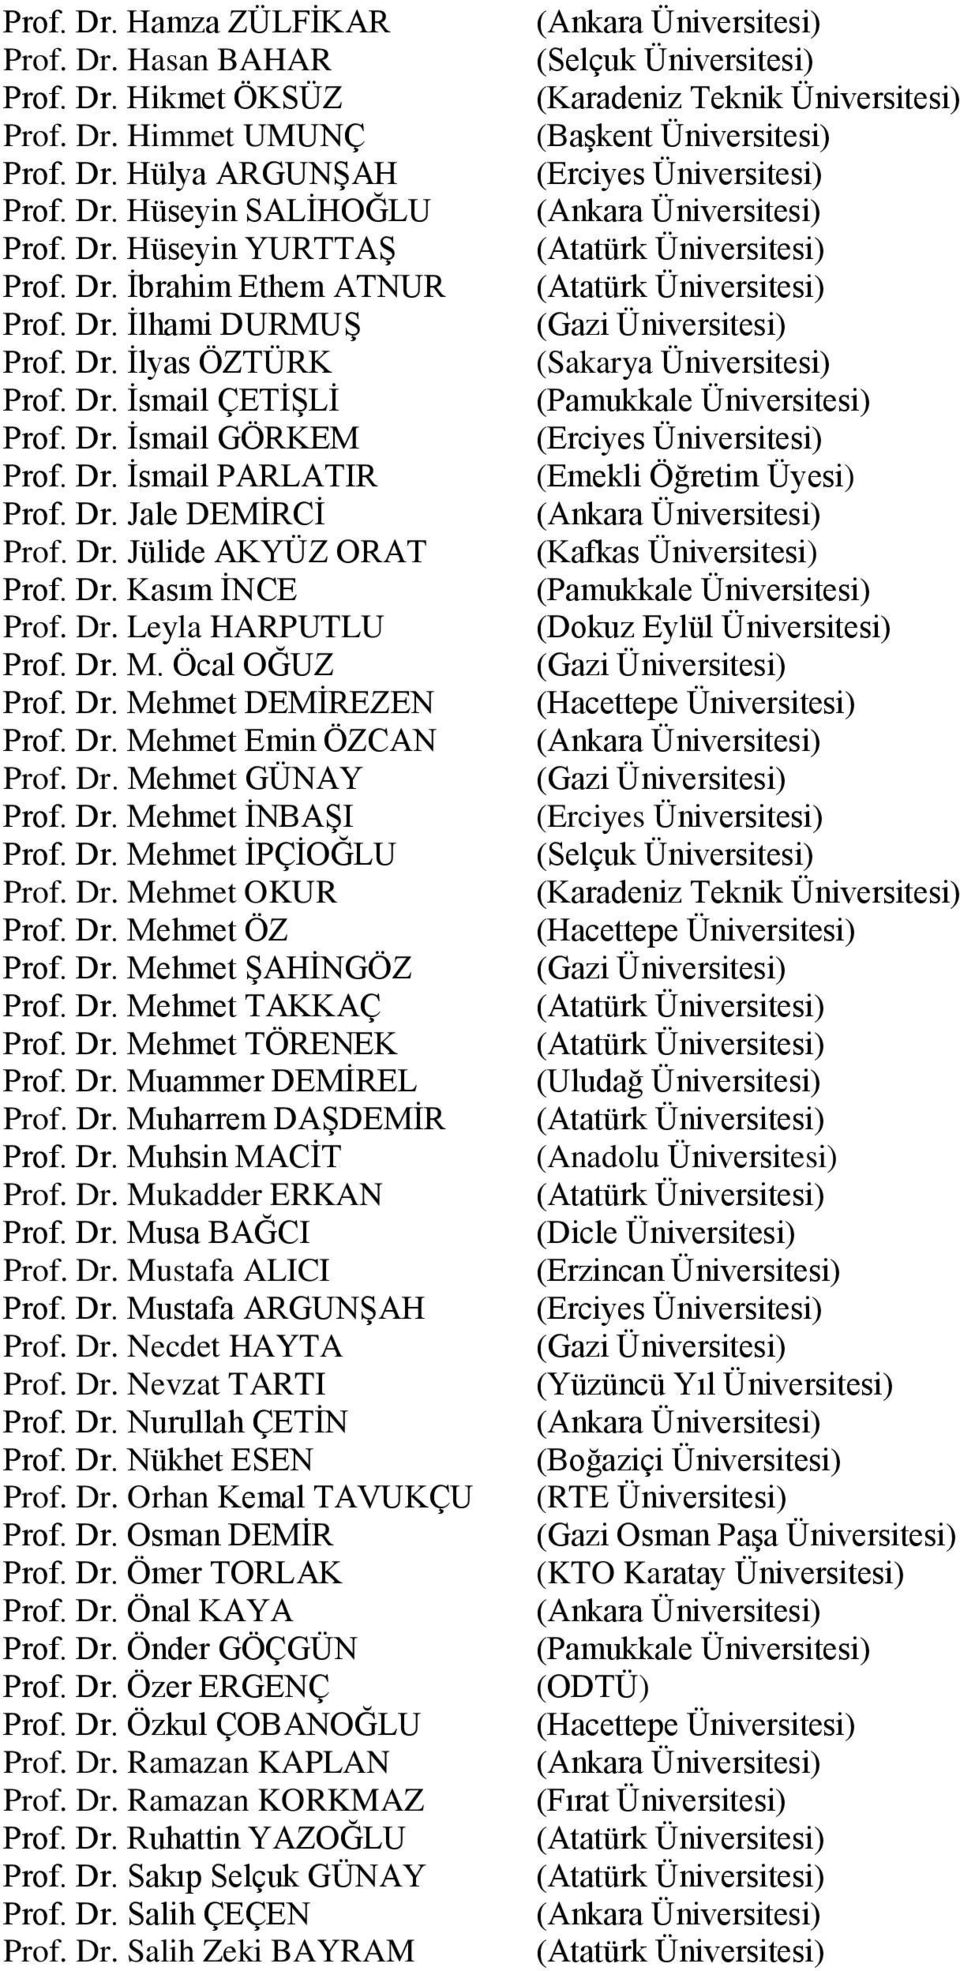 Dr. M. Öcal OĞUZ Prof. Dr. Mehmet DEMĠREZEN Prof. Dr. Mehmet Emin ÖZCAN Prof. Dr. Mehmet GÜNAY Prof. Dr. Mehmet ĠNBAġI Prof. Dr. Mehmet ĠPÇĠOĞLU Prof. Dr. Mehmet OKUR Prof. Dr. Mehmet ÖZ Prof. Dr. Mehmet ġahġngöz Prof.